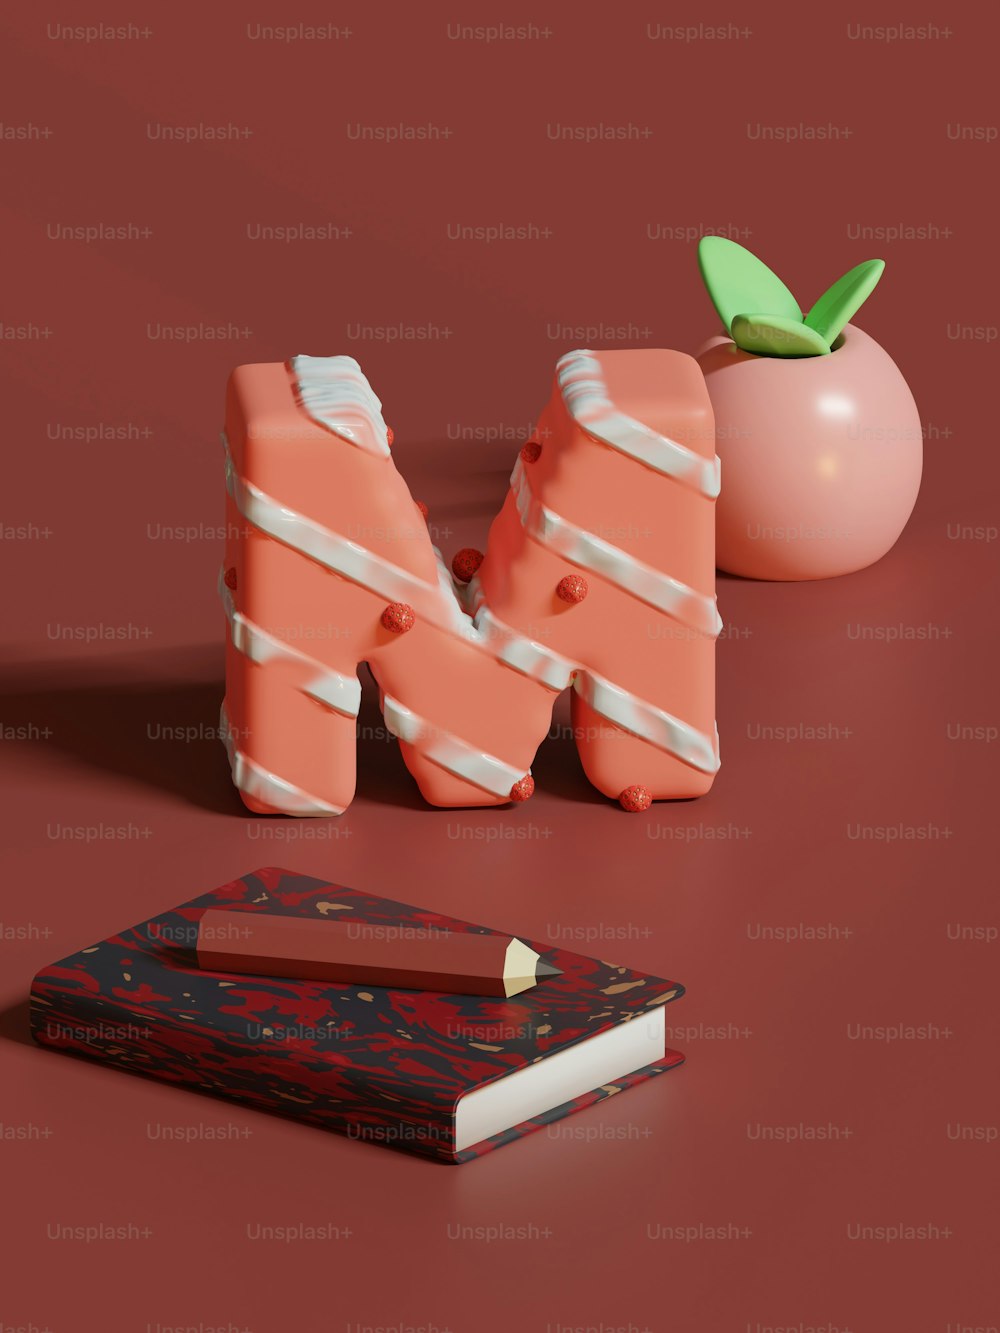 un libro, un lápiz y una manzana sobre una mesa